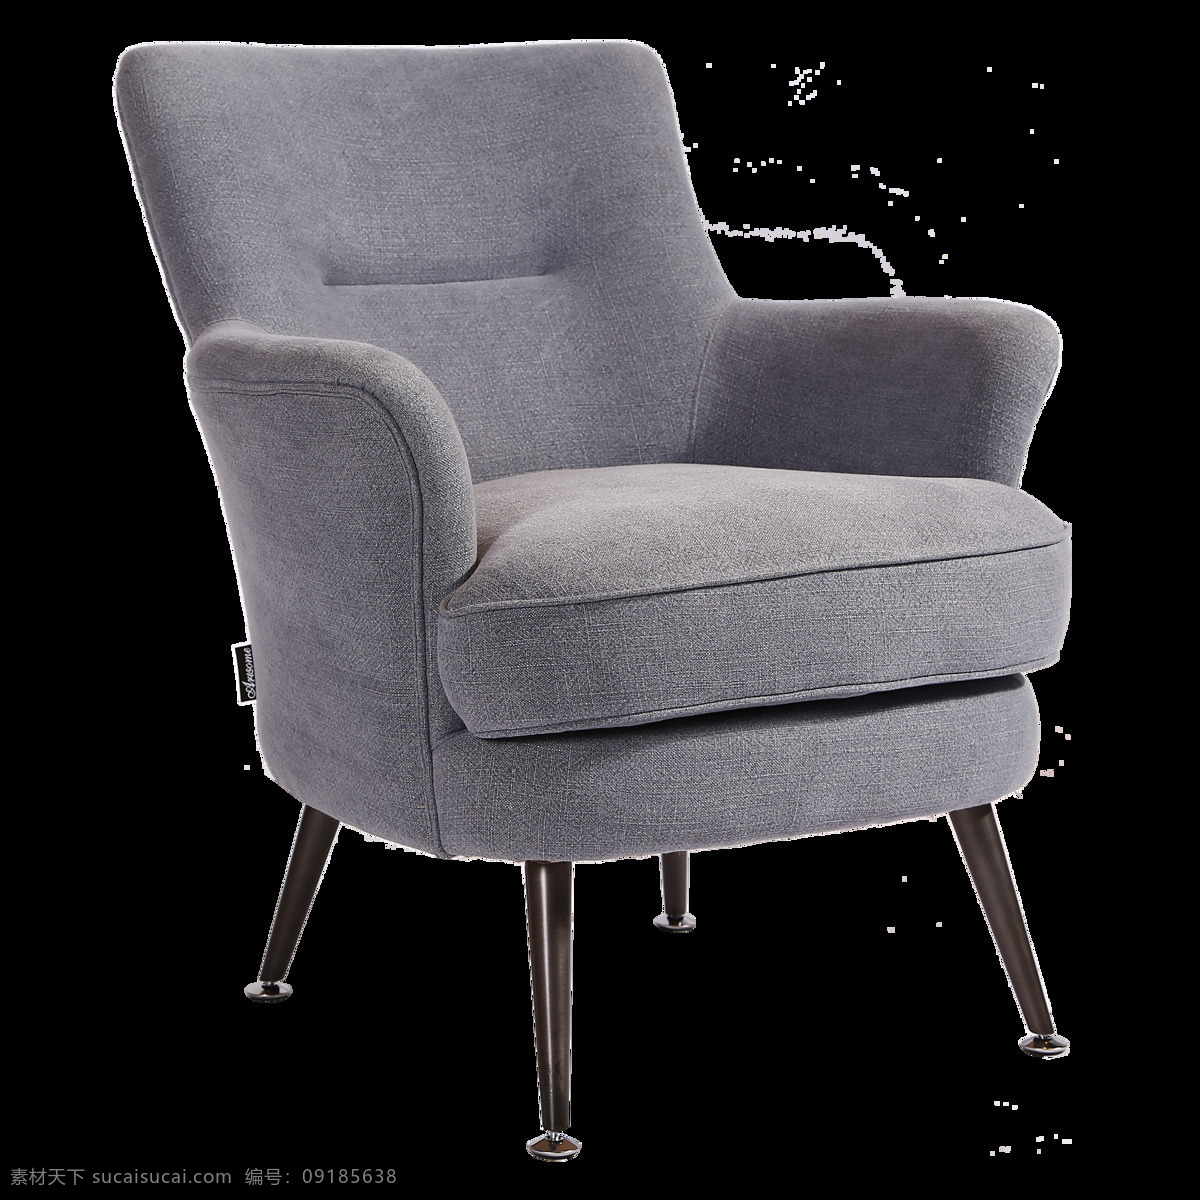 椅 椅子 高级 定制 灰色 麻布 休闲椅 沙发 高级定制 简约 北欧 哥特 自然 地中海 现代 新中式 家具 家居